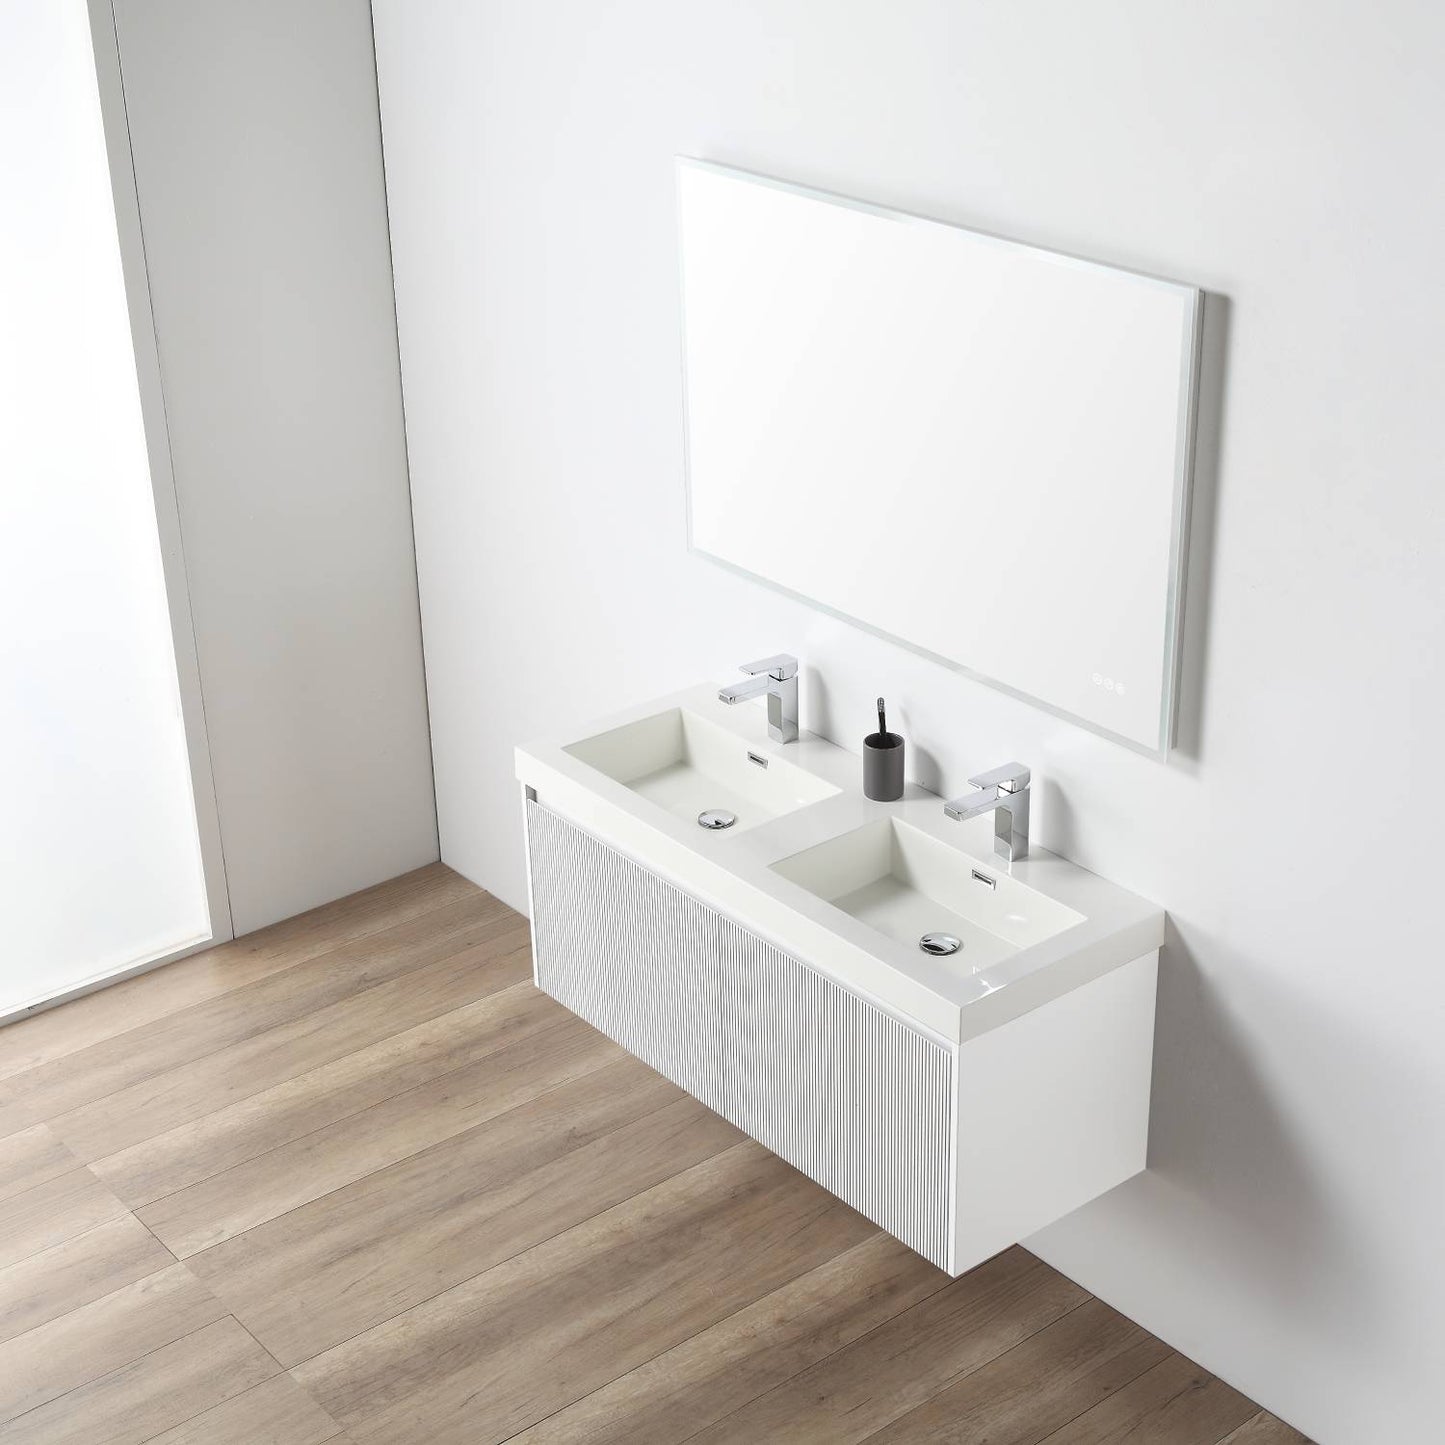 Positano 48" Floating Bathroom Vanity with Double Acrylic Sinks - Matte White